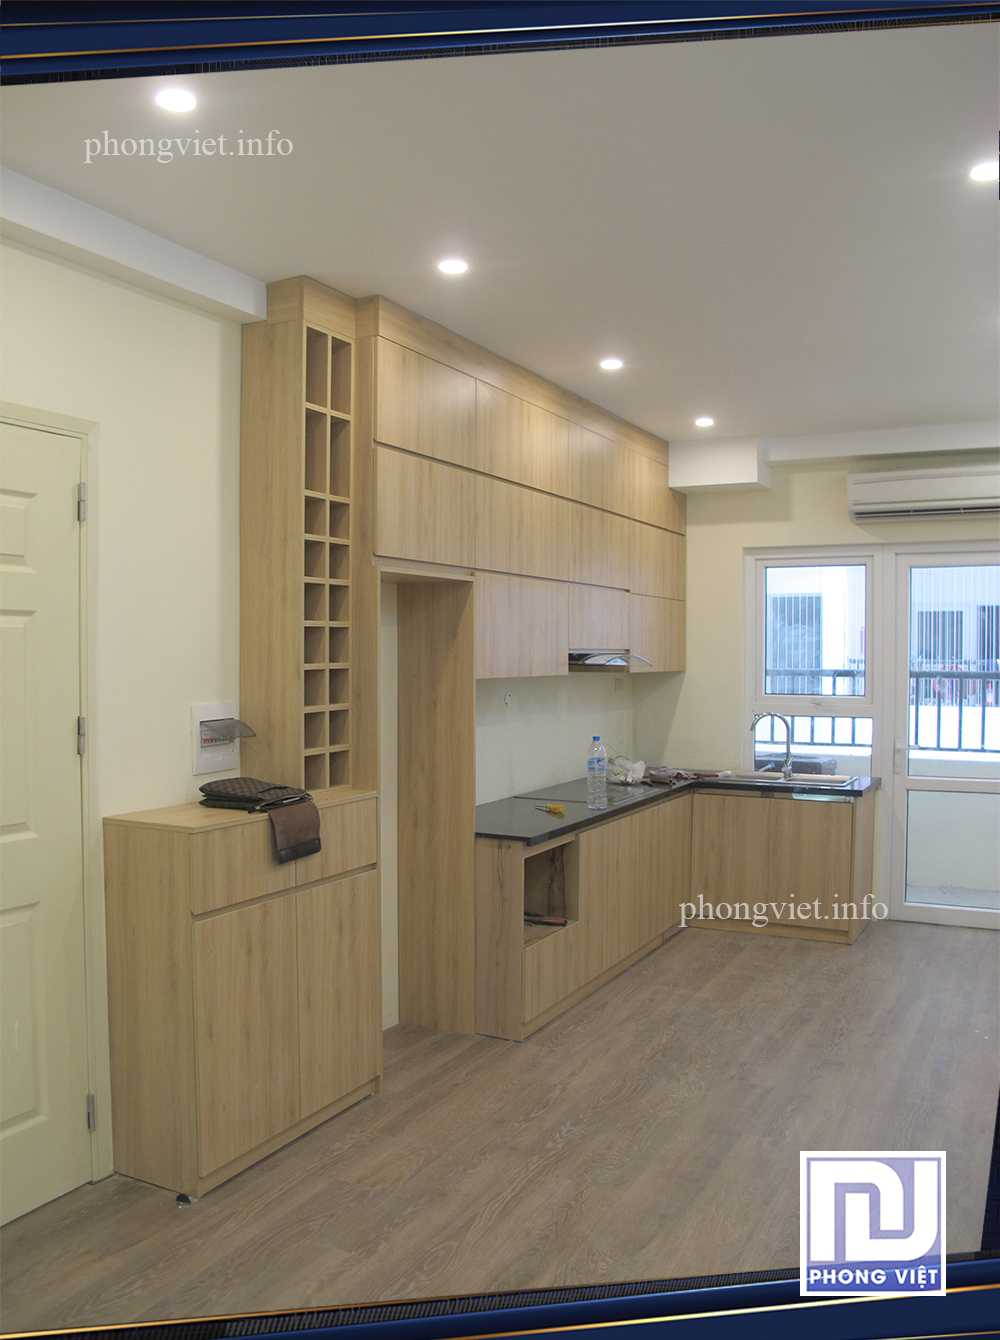 Thiết kế nội thất chung cư 840 HH1B Linh Đàm